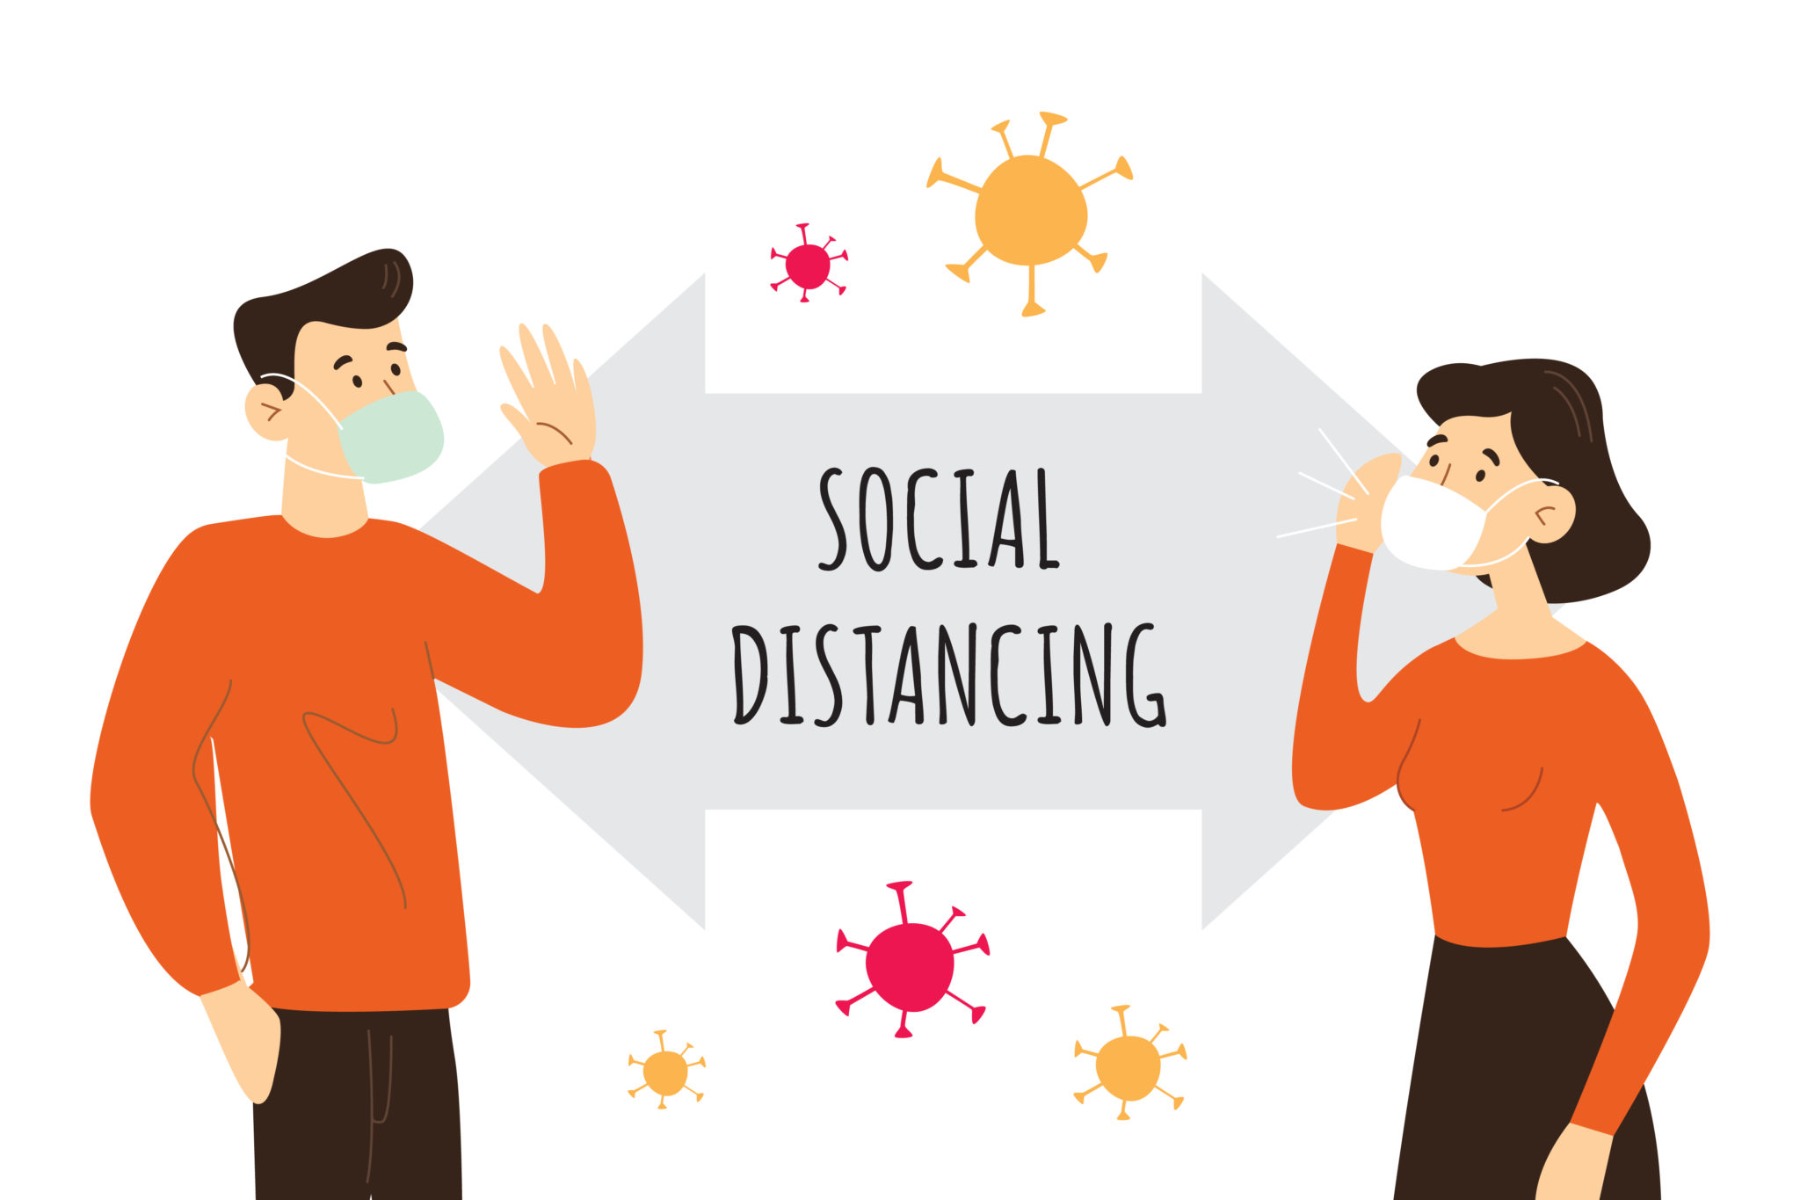 Social distance diagram